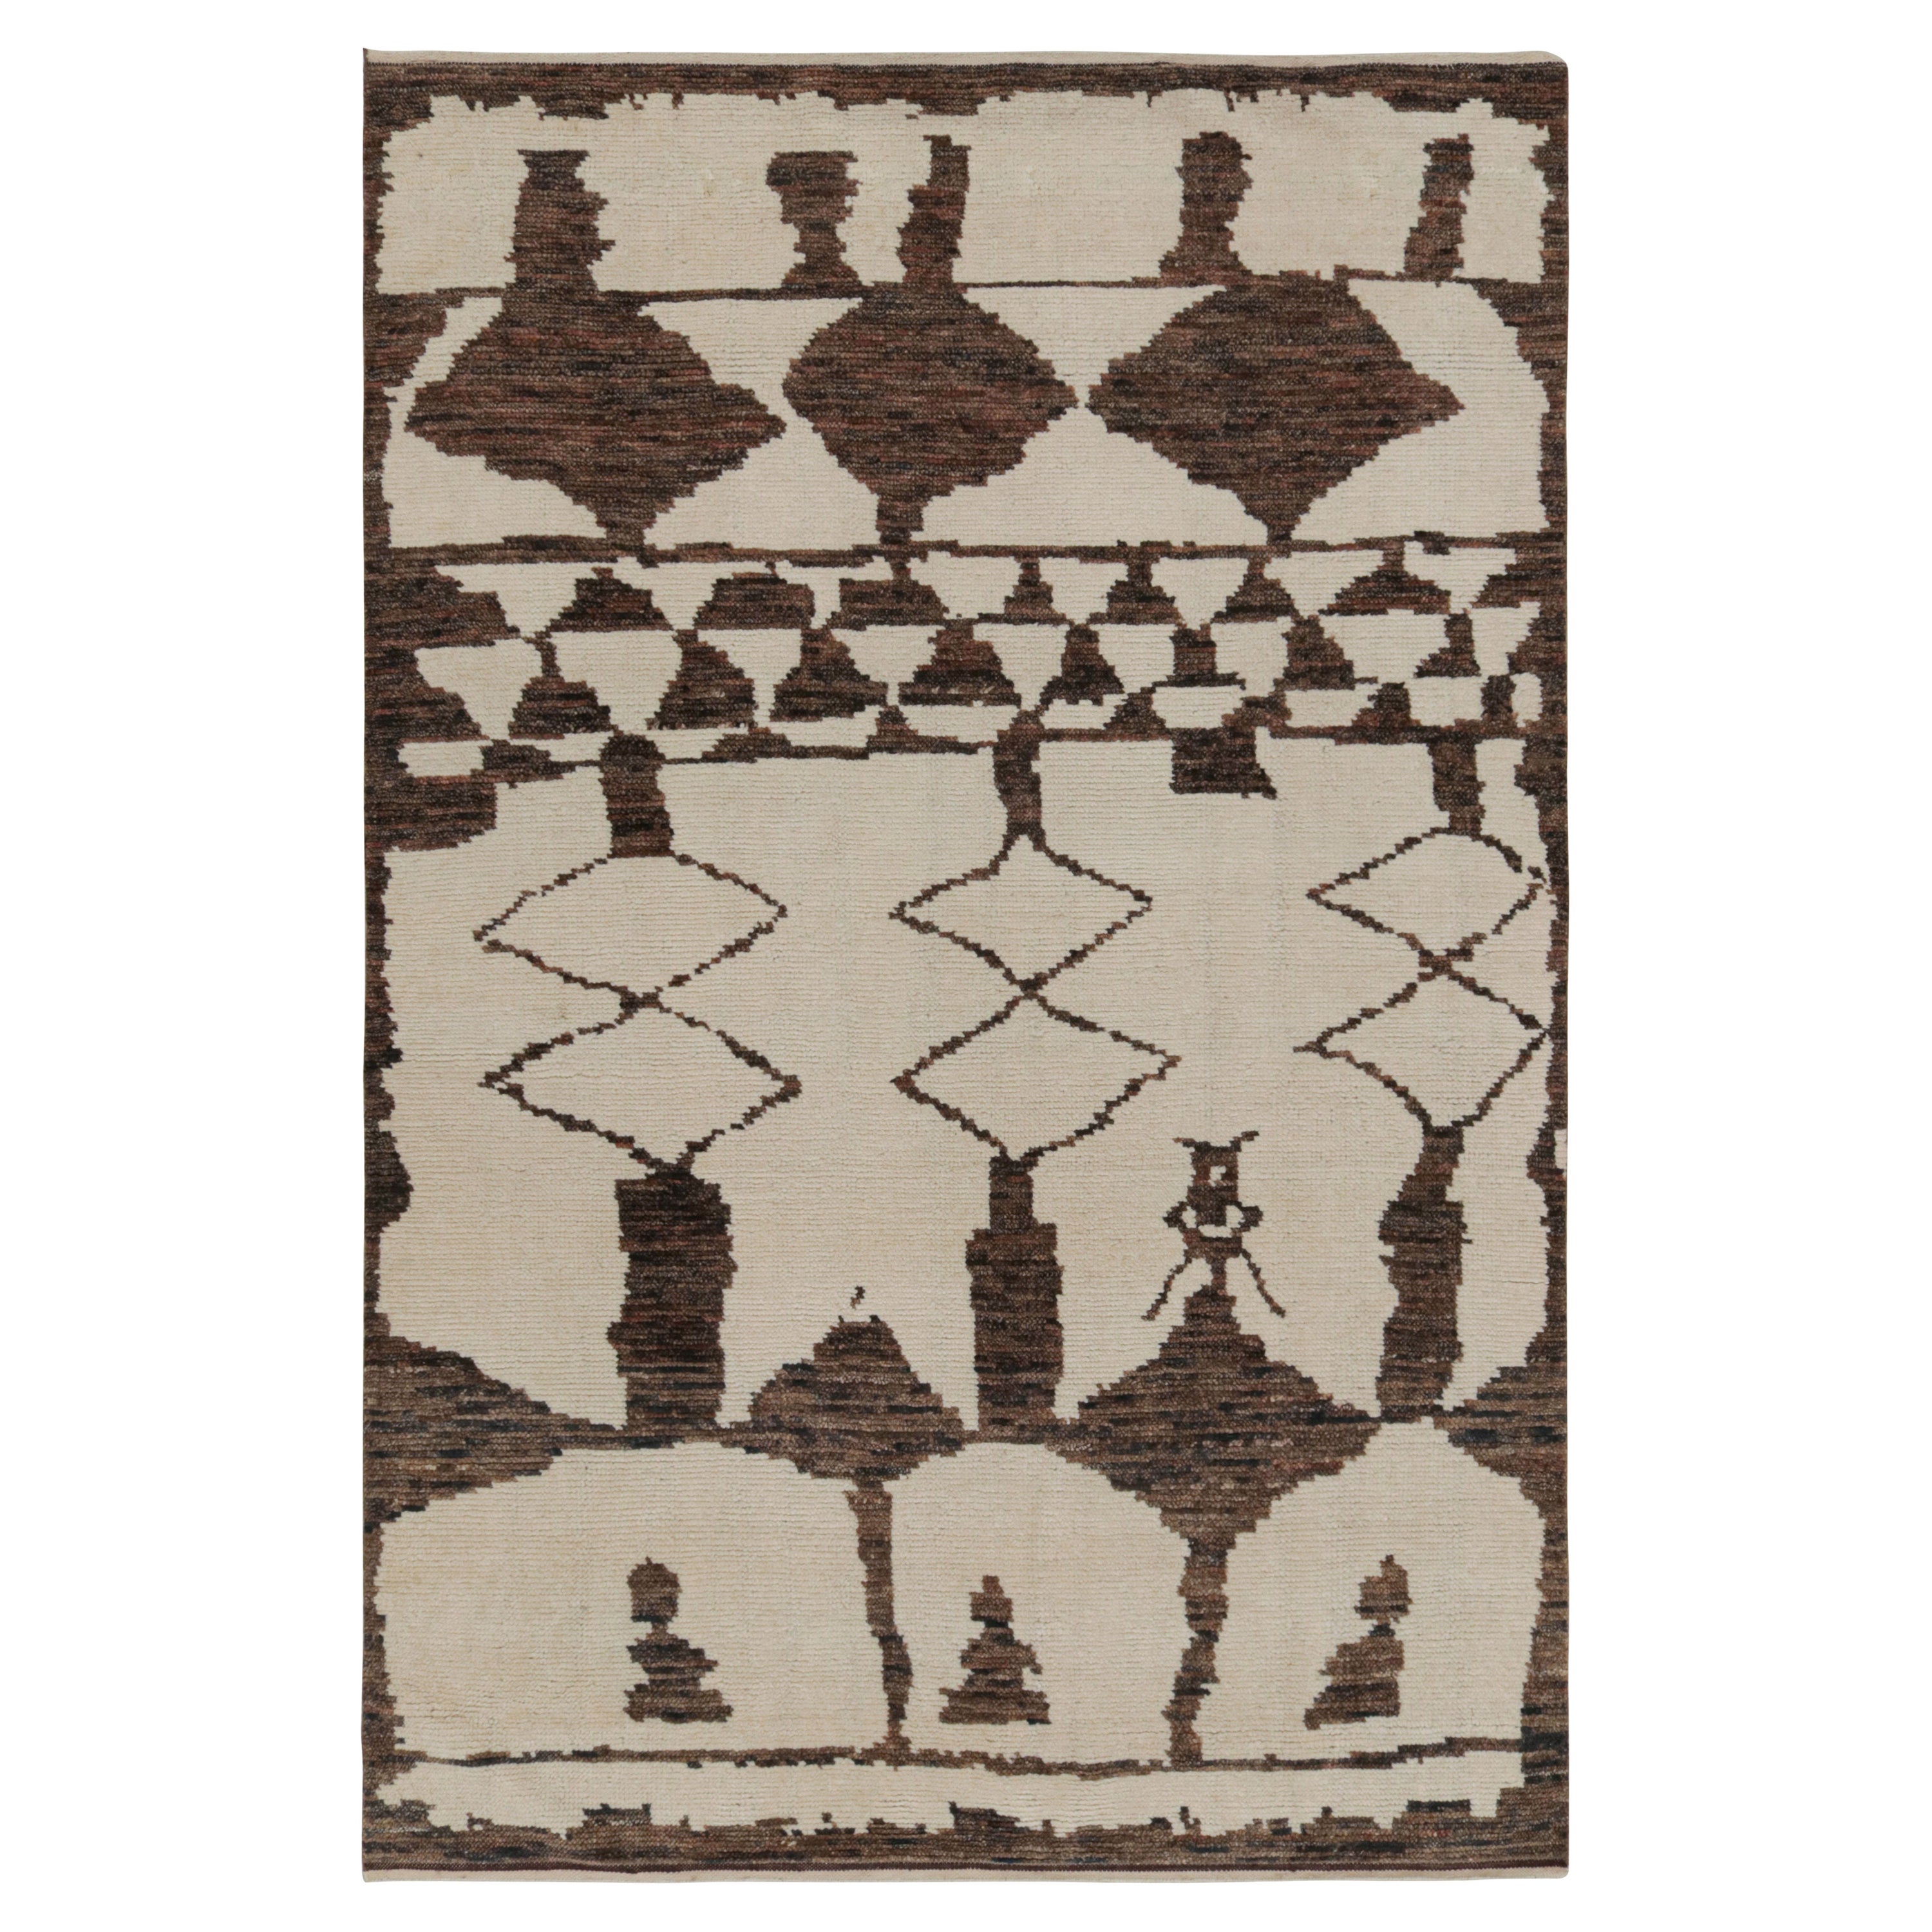 Rug & Kilim's Contemporary Moroccan Style Geometric Rug in Beige-Brown (tapis géométrique contemporain de style marocain en beige et brun)